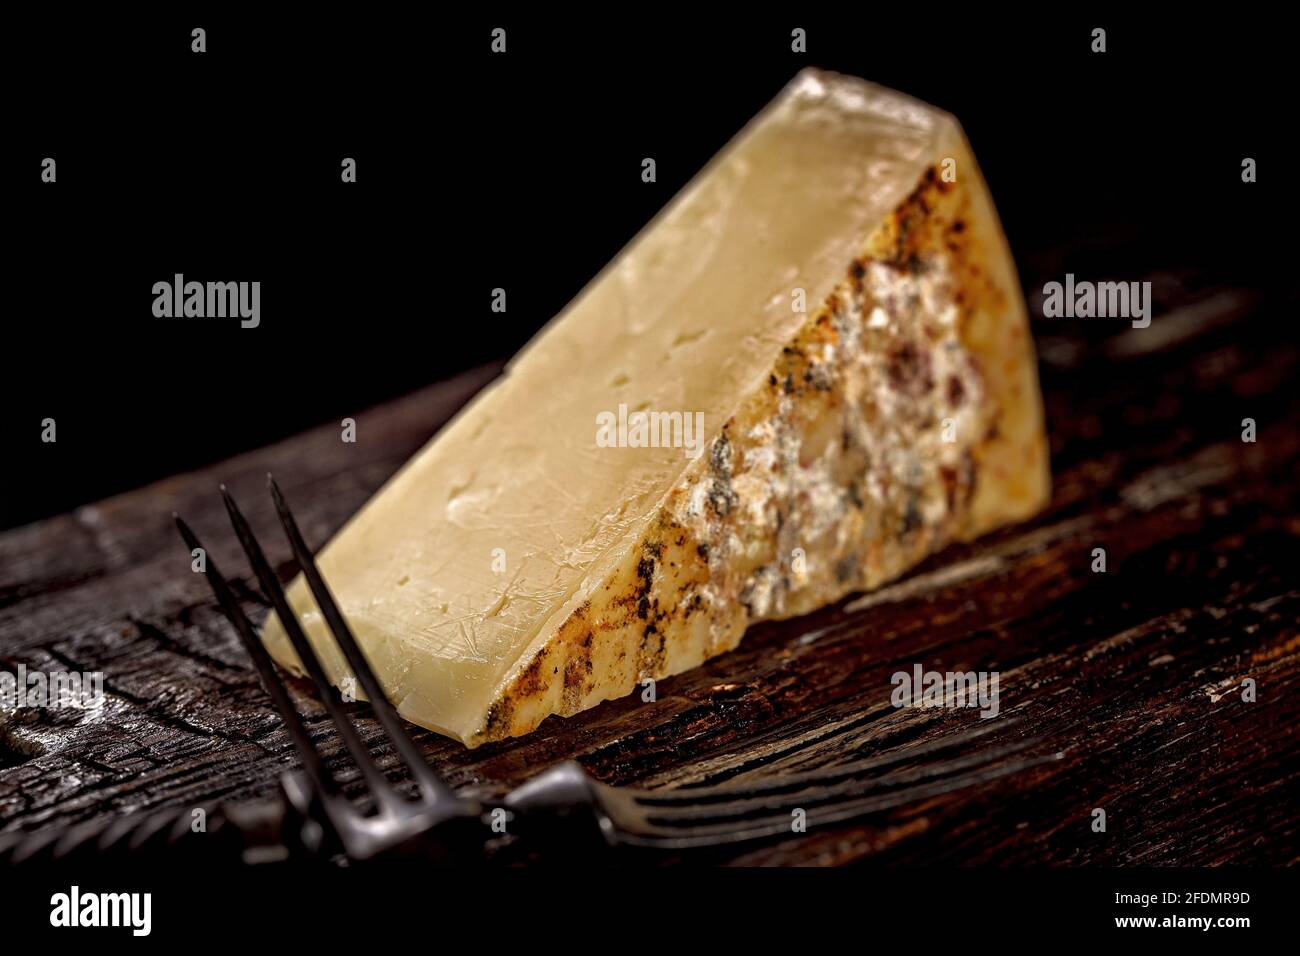 Nahaufnahme eines Stücks Cheddar-Käse. Gereiftem Käse aus Bauernmilch, ein altes englisches Rezept. Ein Stück Käse auf einem dunklen Holzbrett und ein Käse k Stockfoto